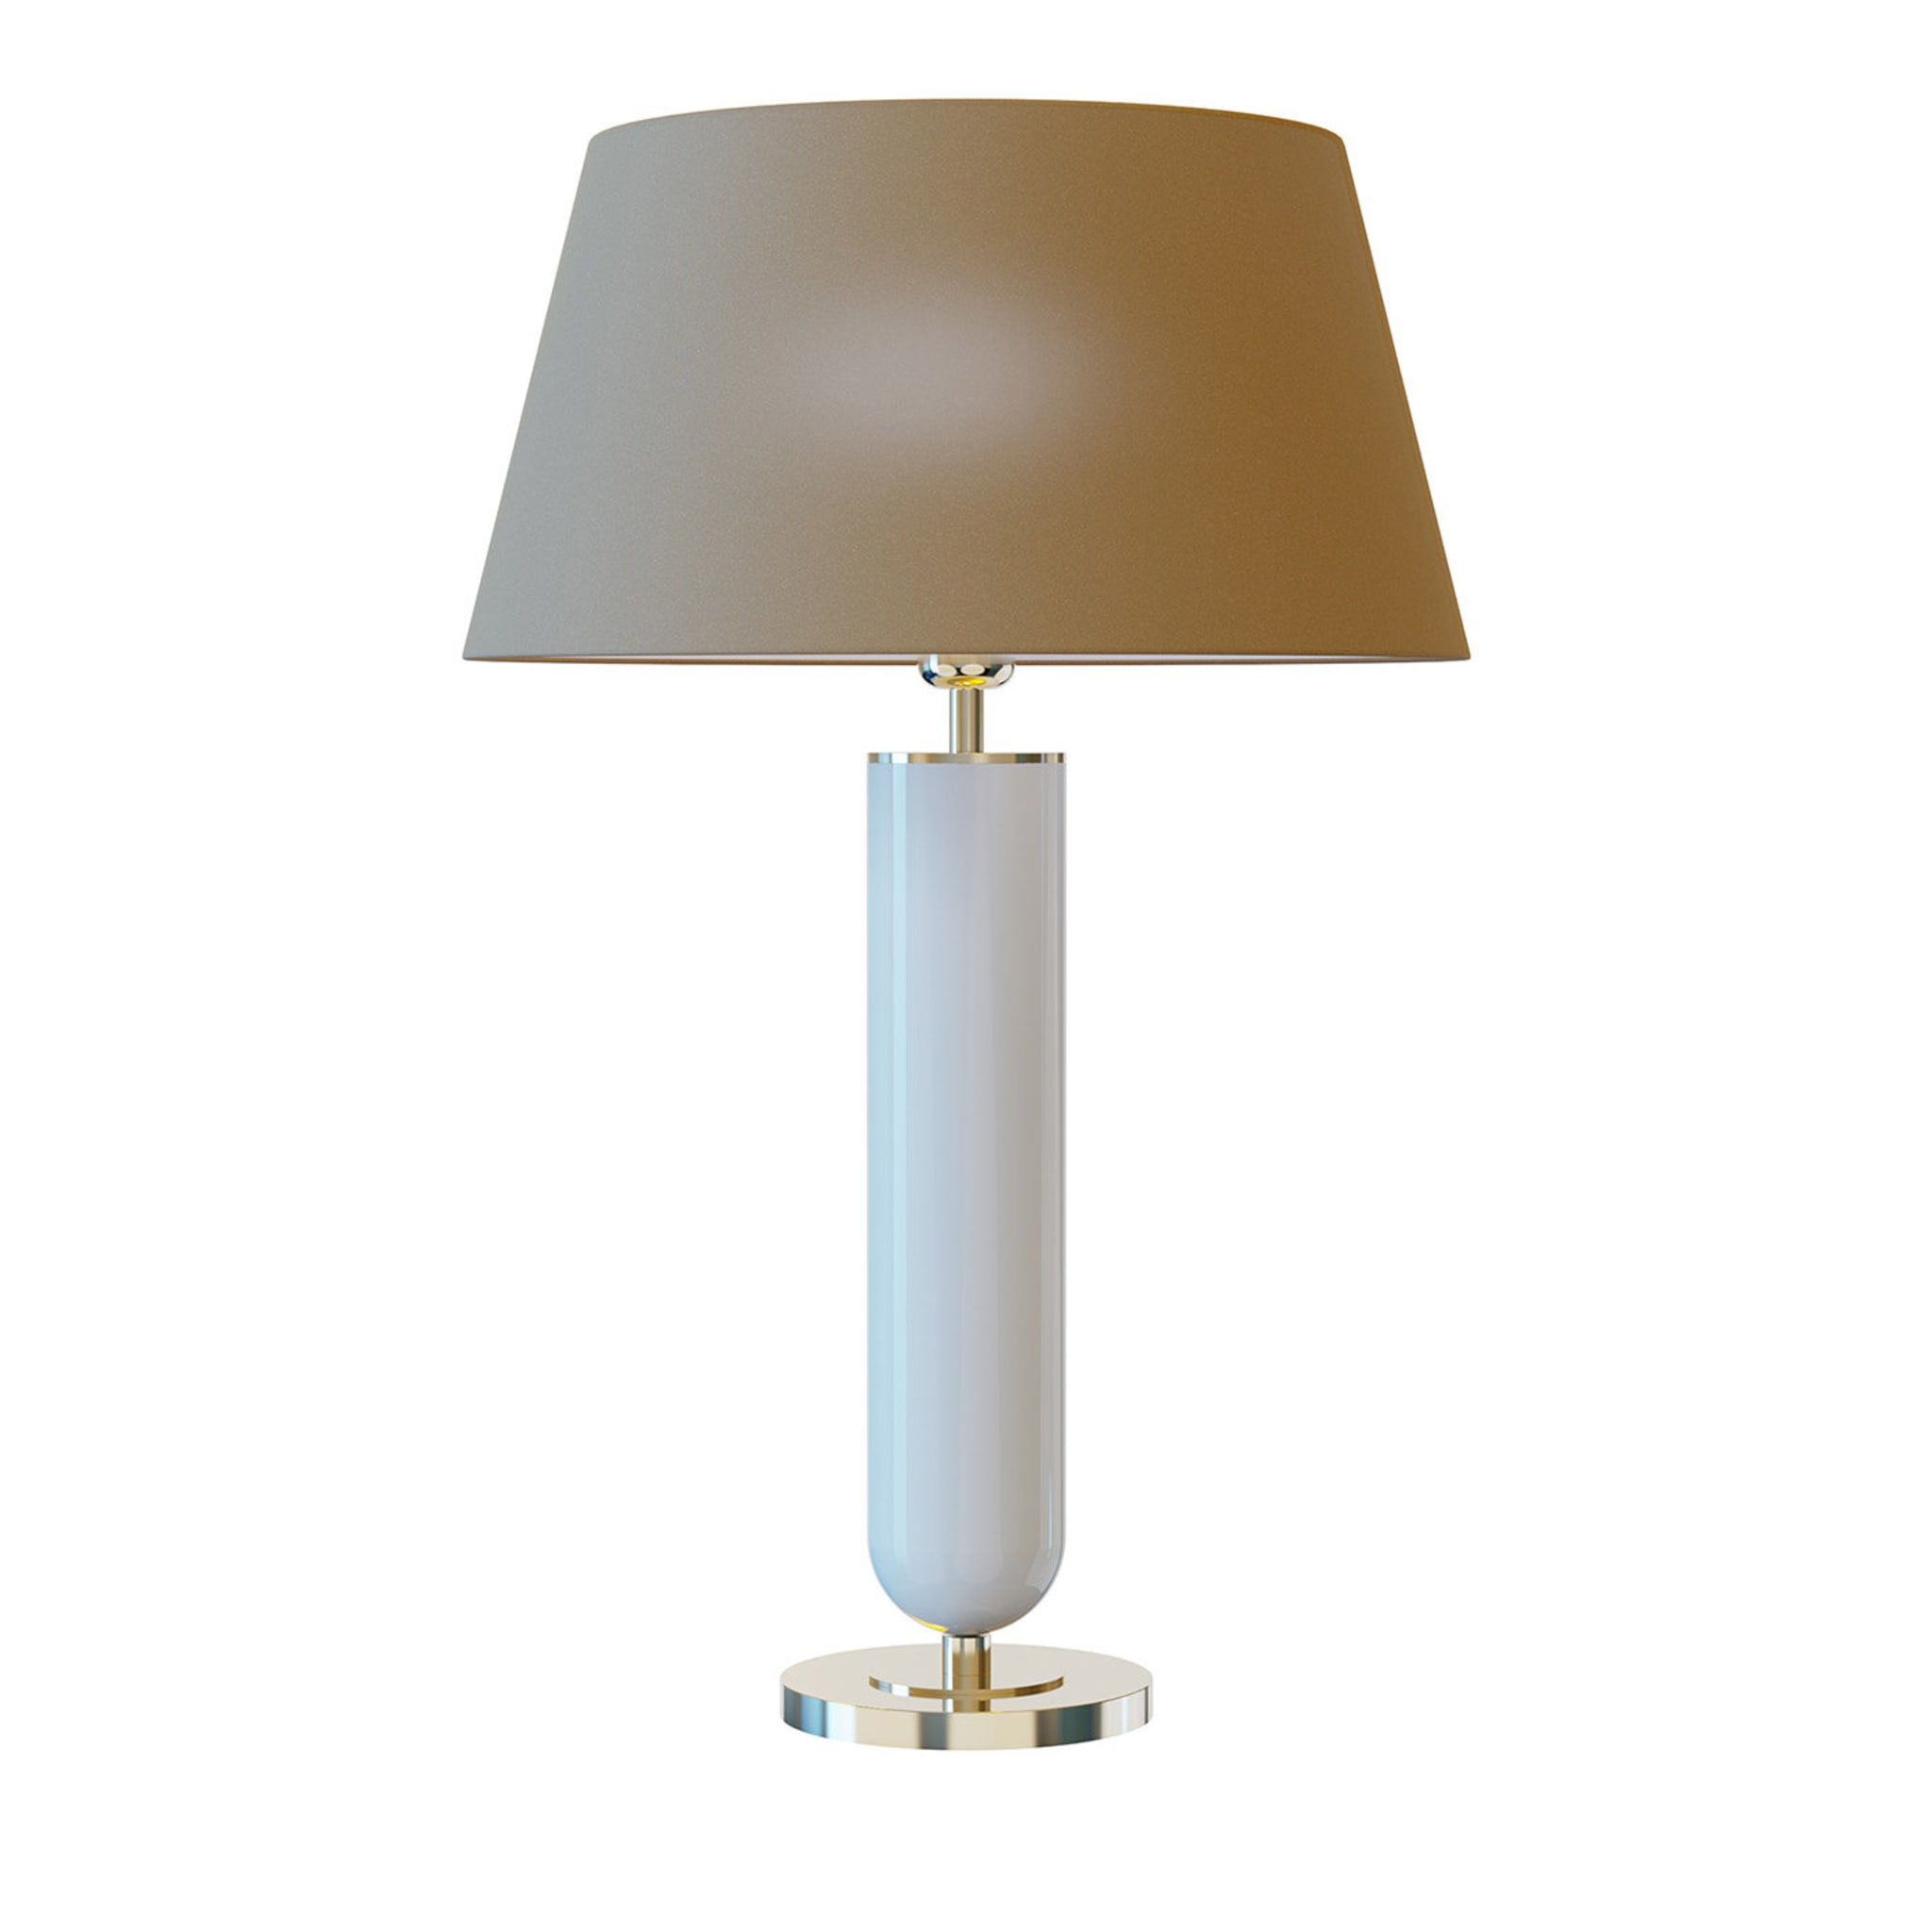 Ducas Table Lamp #1 - Main view